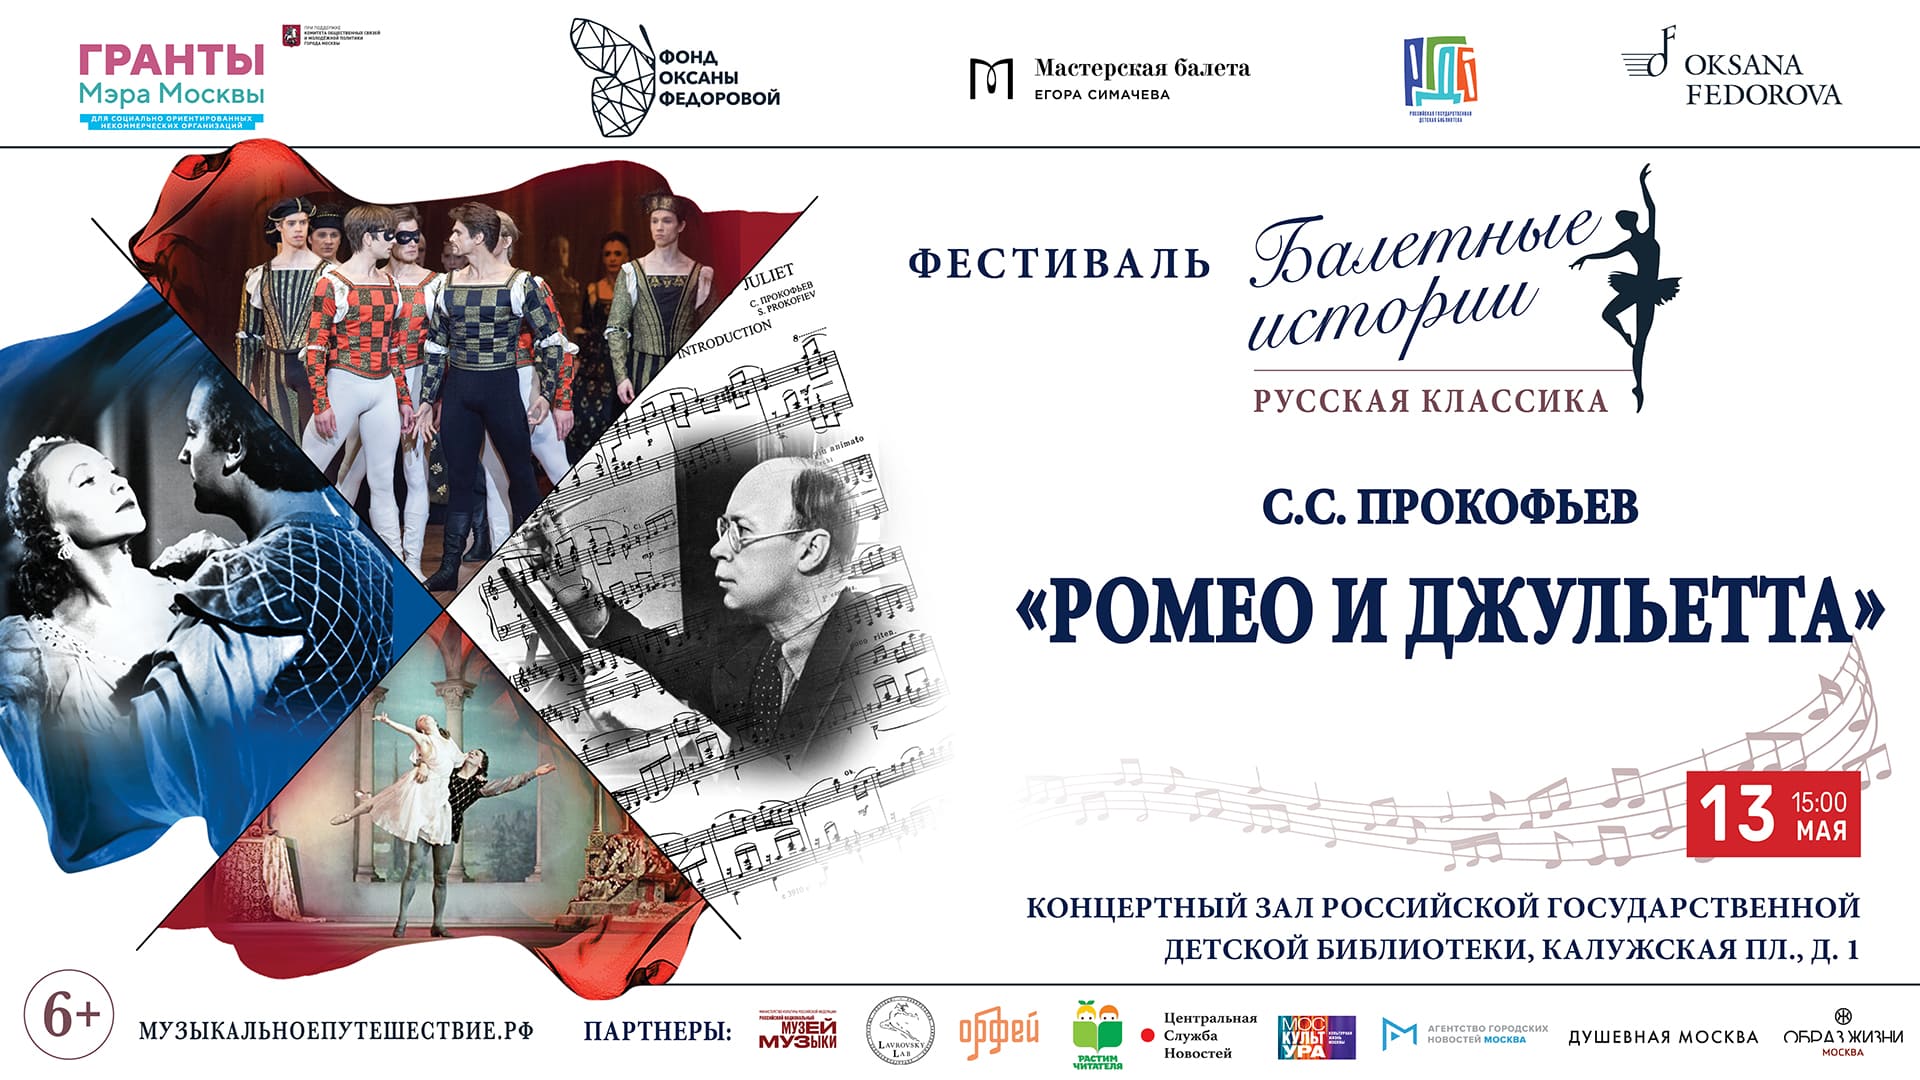 Историю создания балета «Ромео и Джульетта» С. Прокофьева представят 13 мая в РГДБ